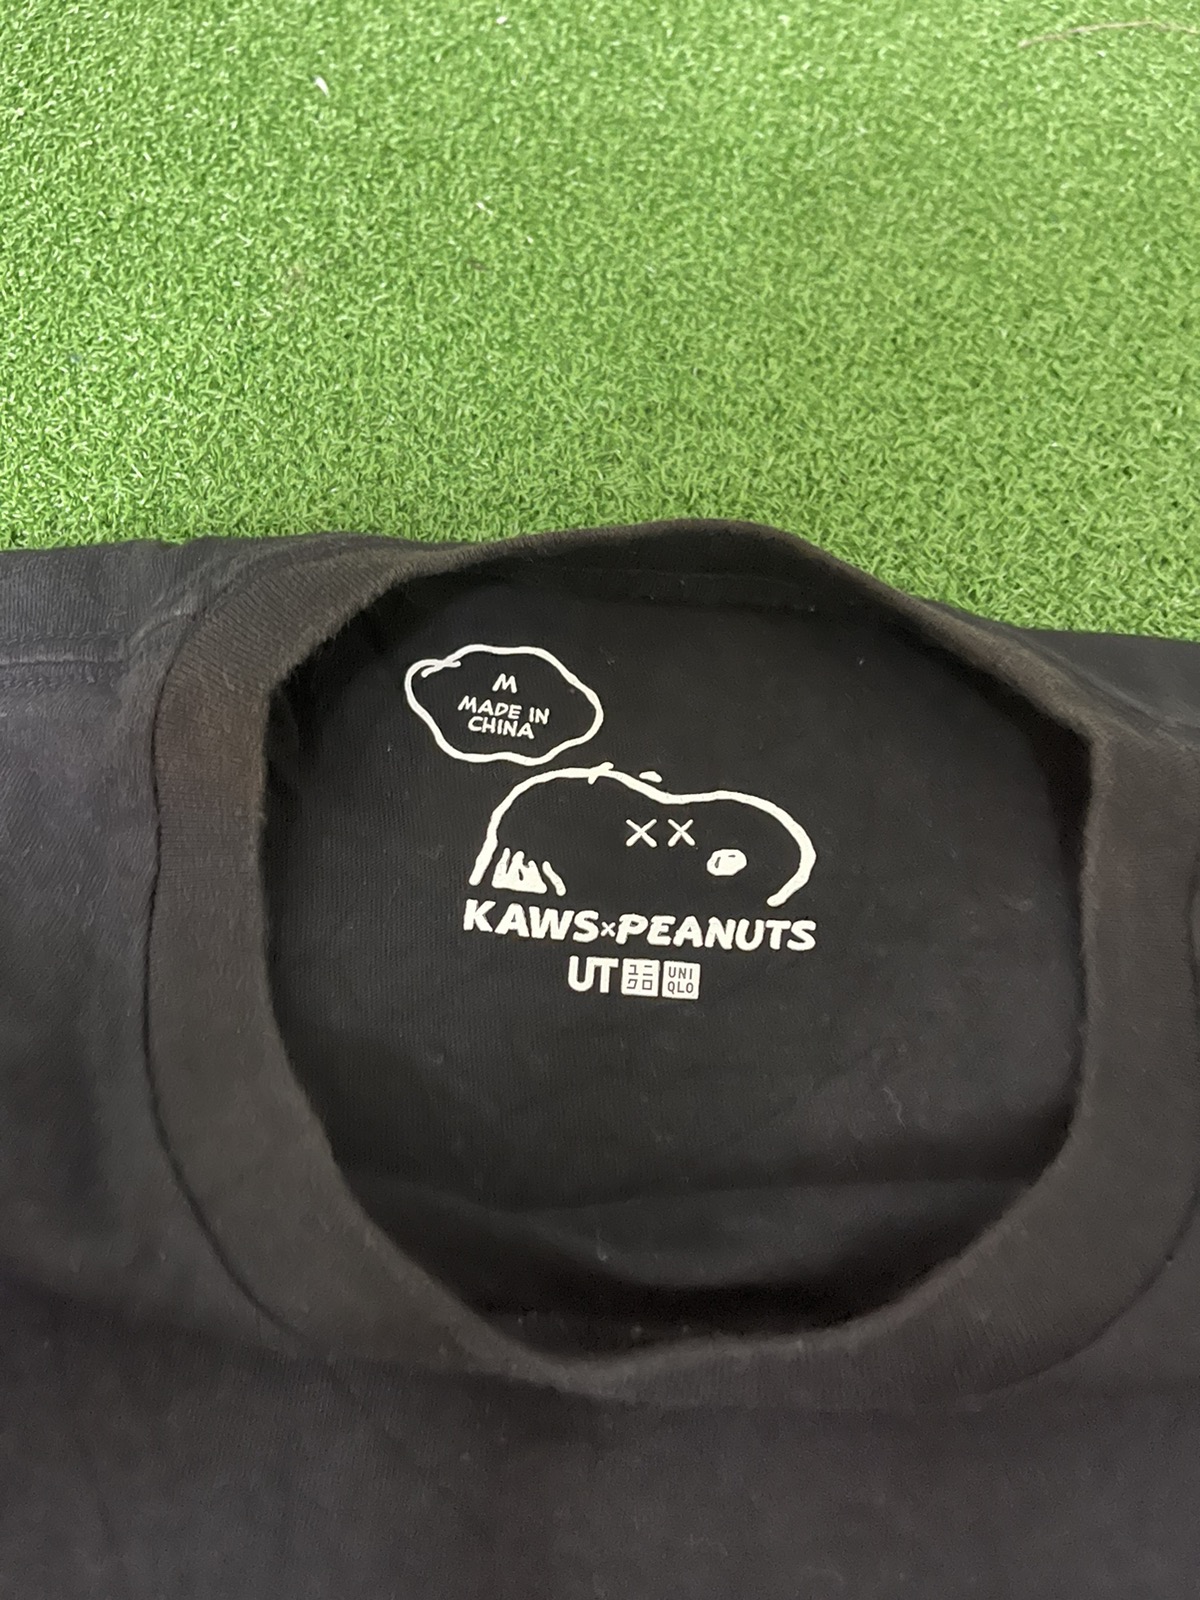 Kaws - Kaws x Peanuts Joe Kaws Graphic Tees / Eva / Khara - 4